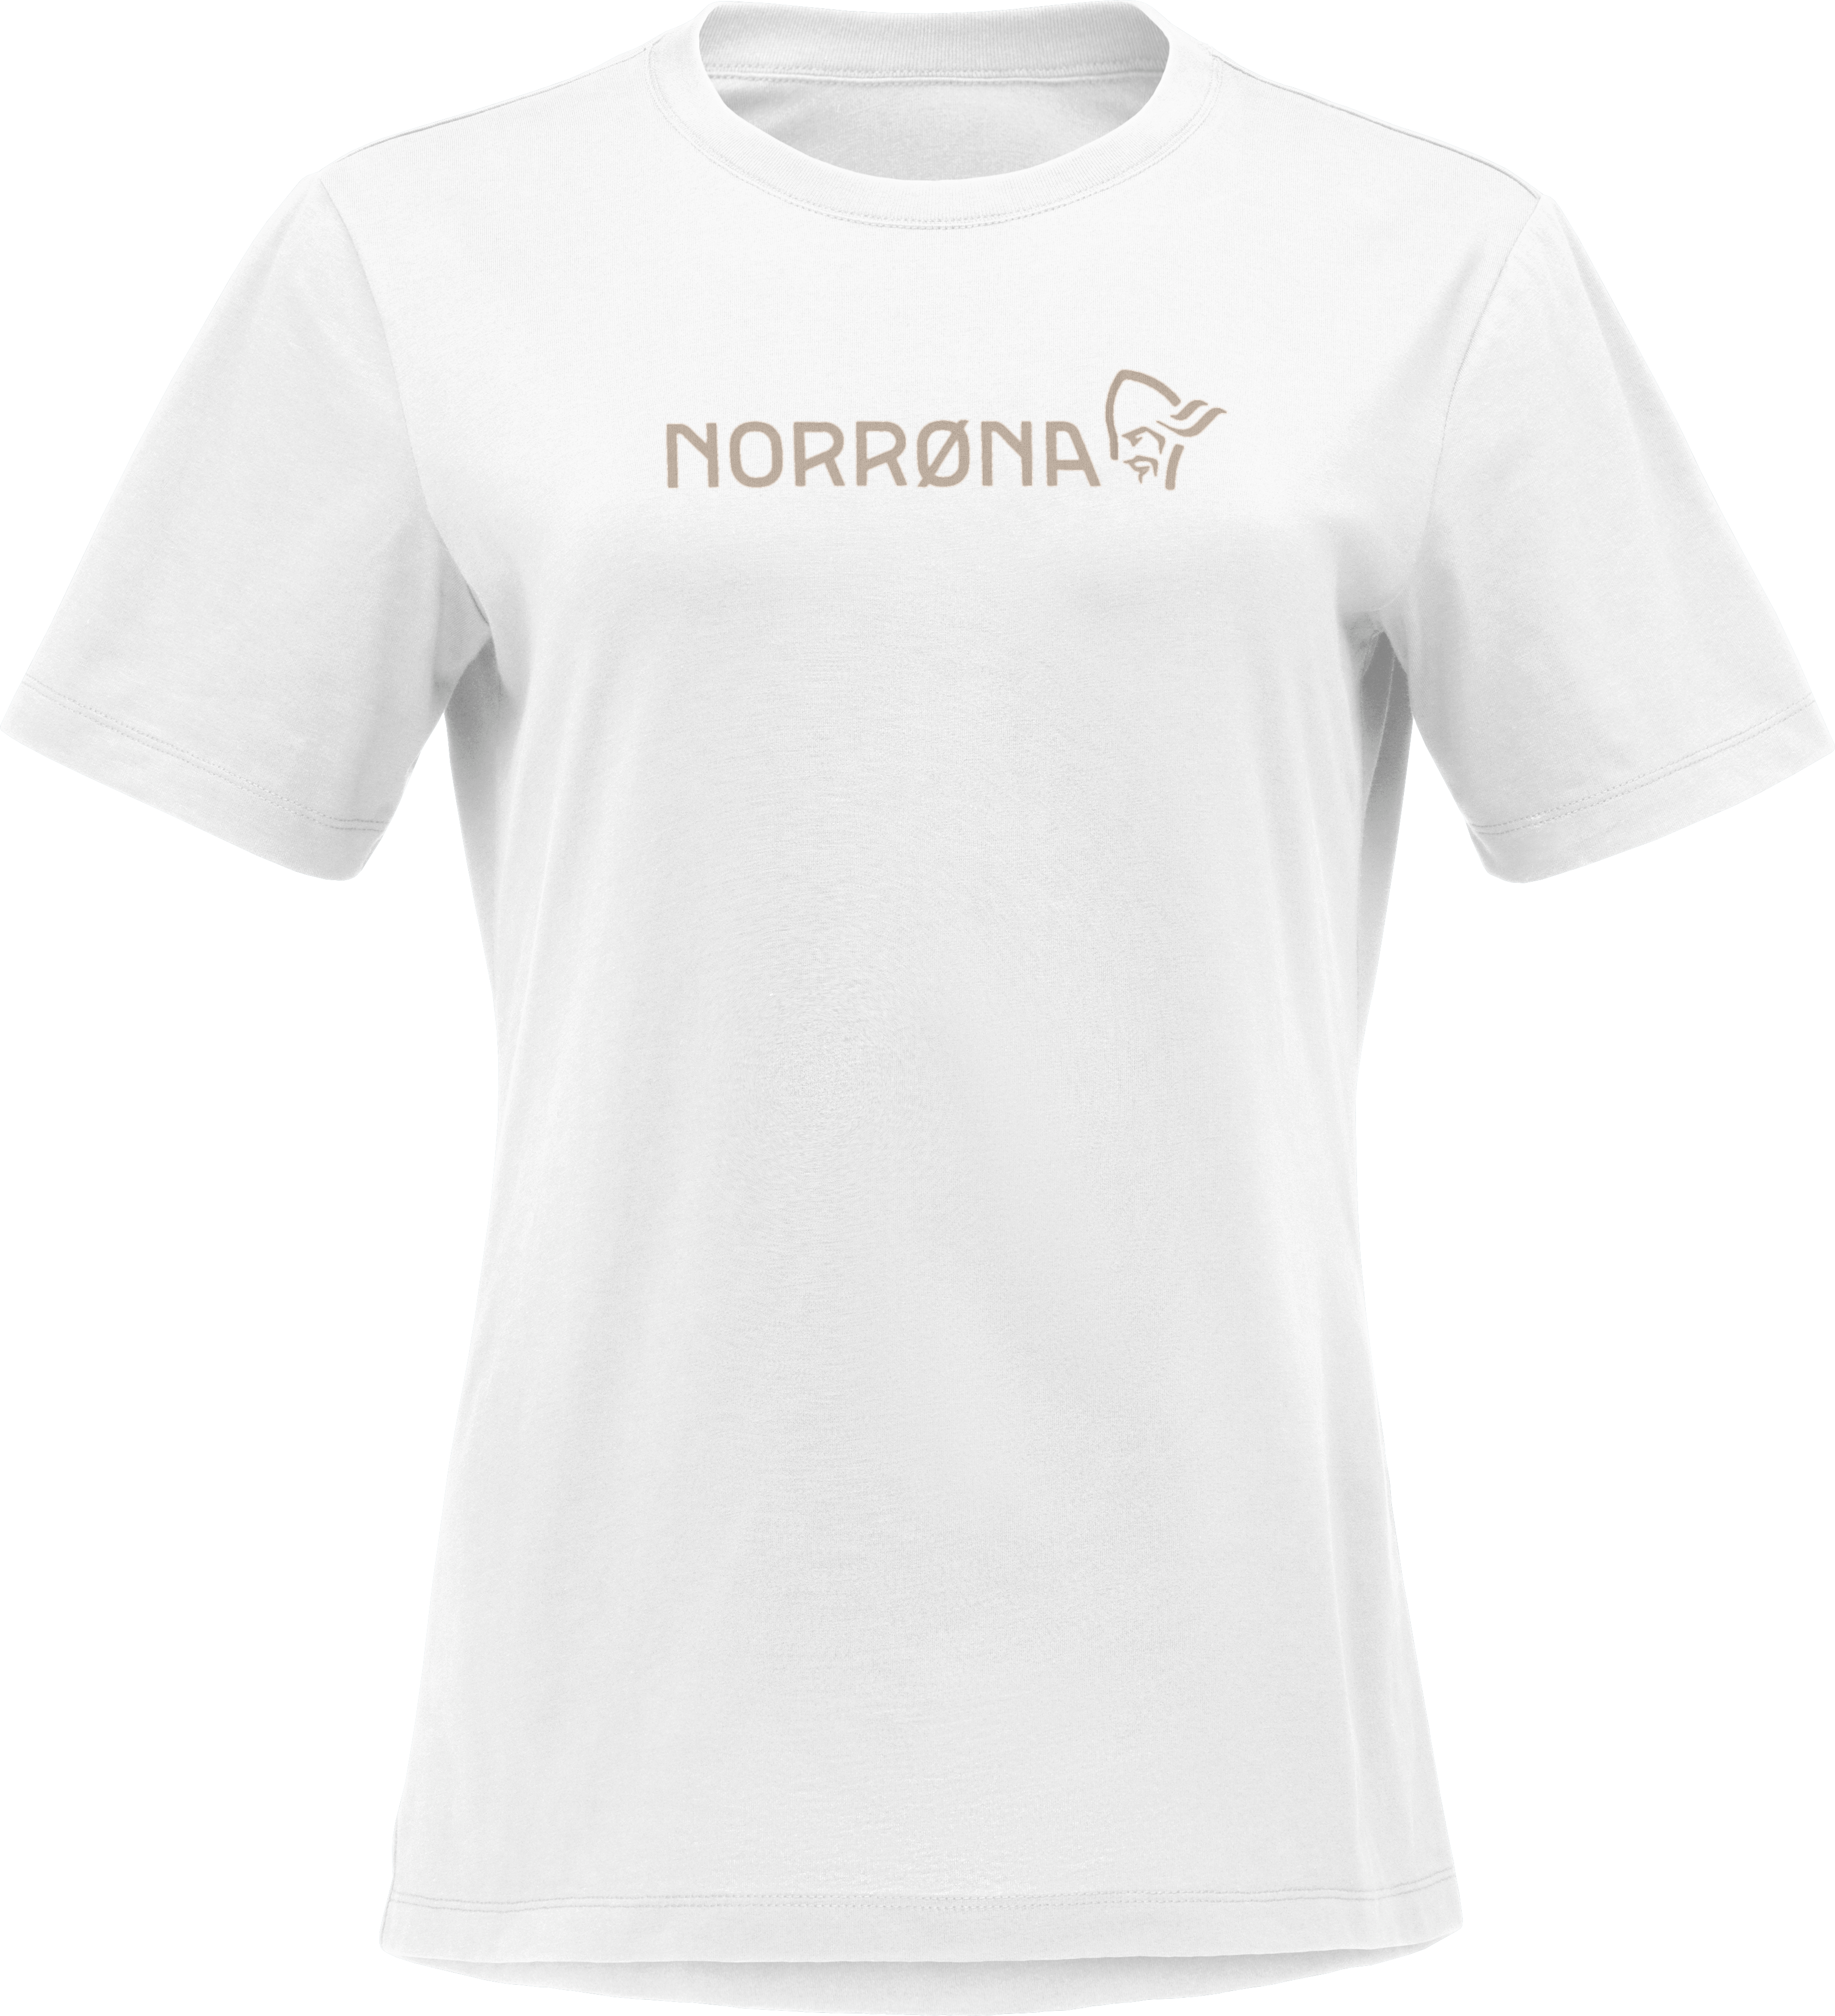 Norrøna Norrøna Women's /29 Cotton Norrøna Viking T-shirt Pure White XS, Pure White